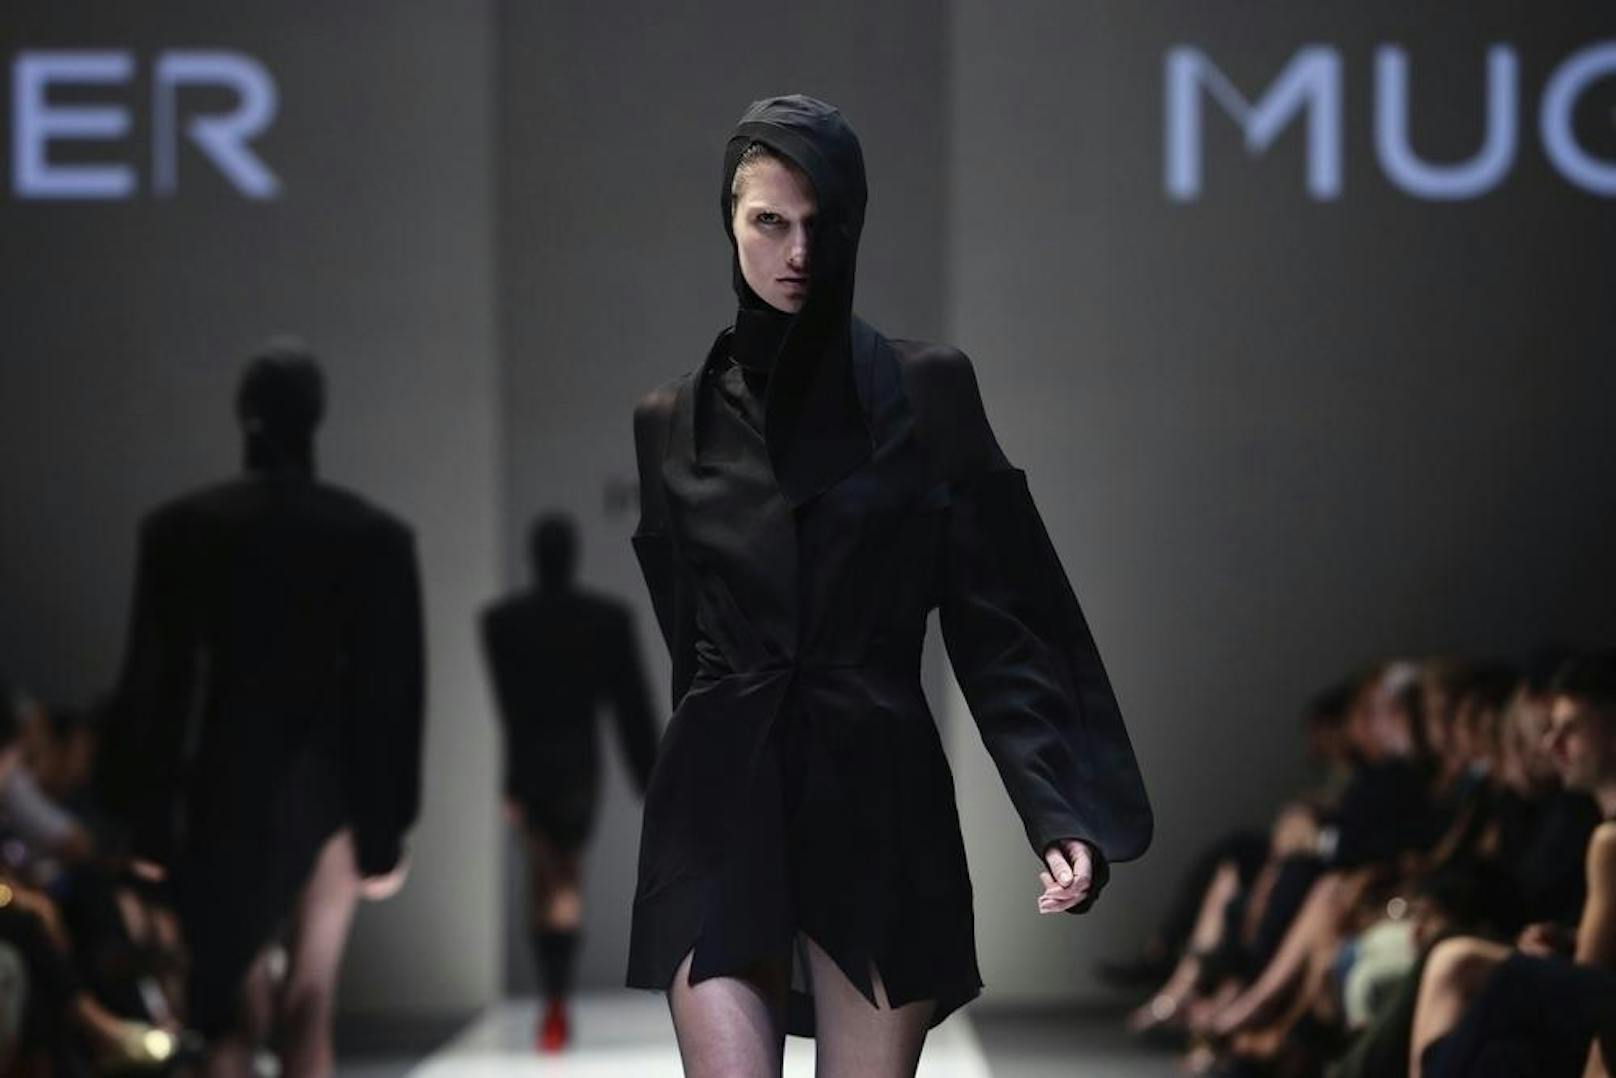 Thierry Muglers Mode hat sich seit den 80ern nicht wesentlich geändert. Stets dunkel und mystisch steht sie in komplettem Widerspruch zu seinen Parfüms.